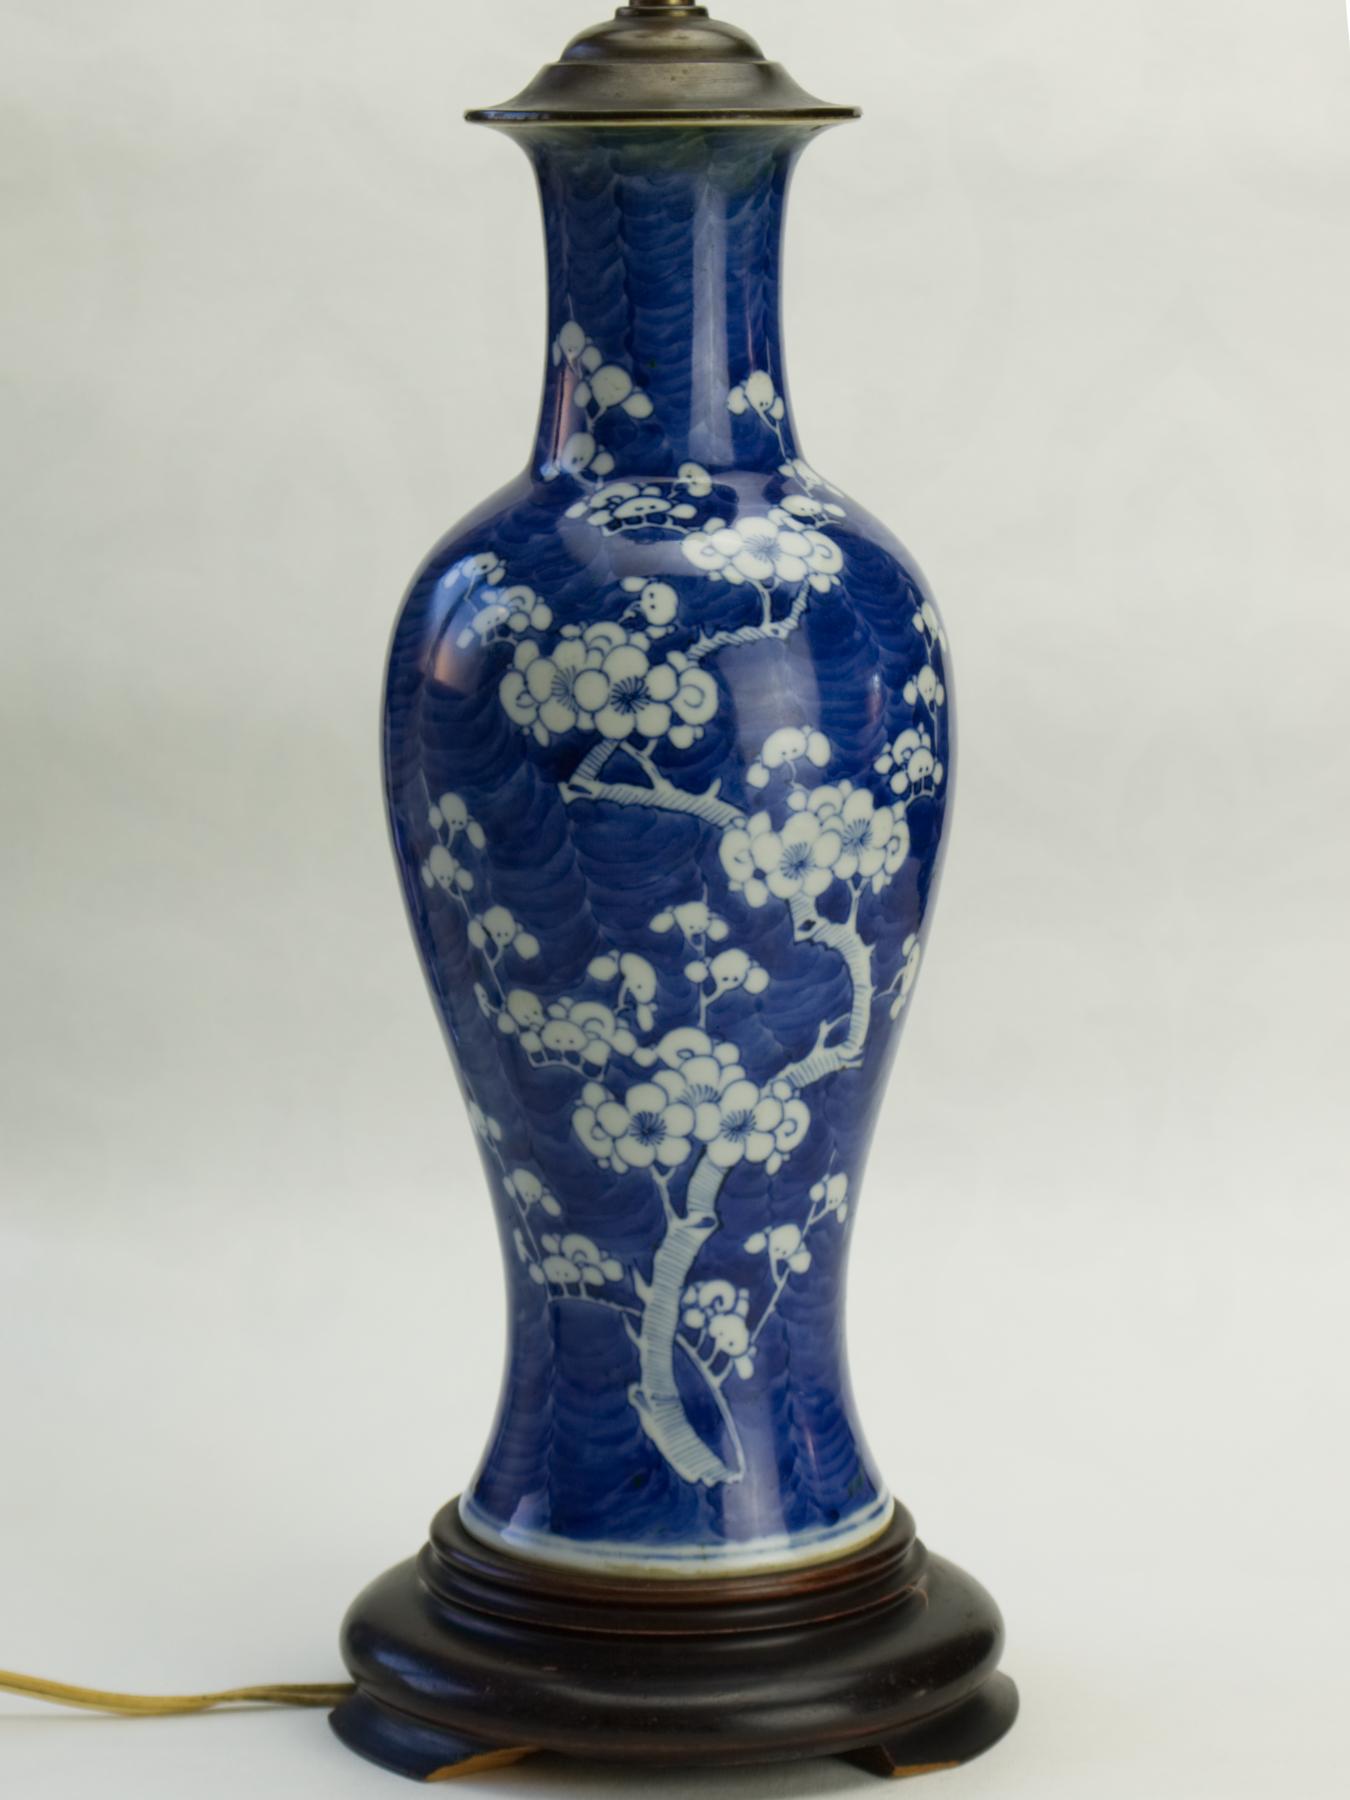 Une grande lampe à vase en porcelaine bleu et blanc en forme de prunus, sur une base en bois. Pas de cheveux, pas de restauration. La hauteur du vase est d'environ 25 cm. Traces d'utilisation et de vieillissement. Le vase seul mesure 34cm / 13.34 in